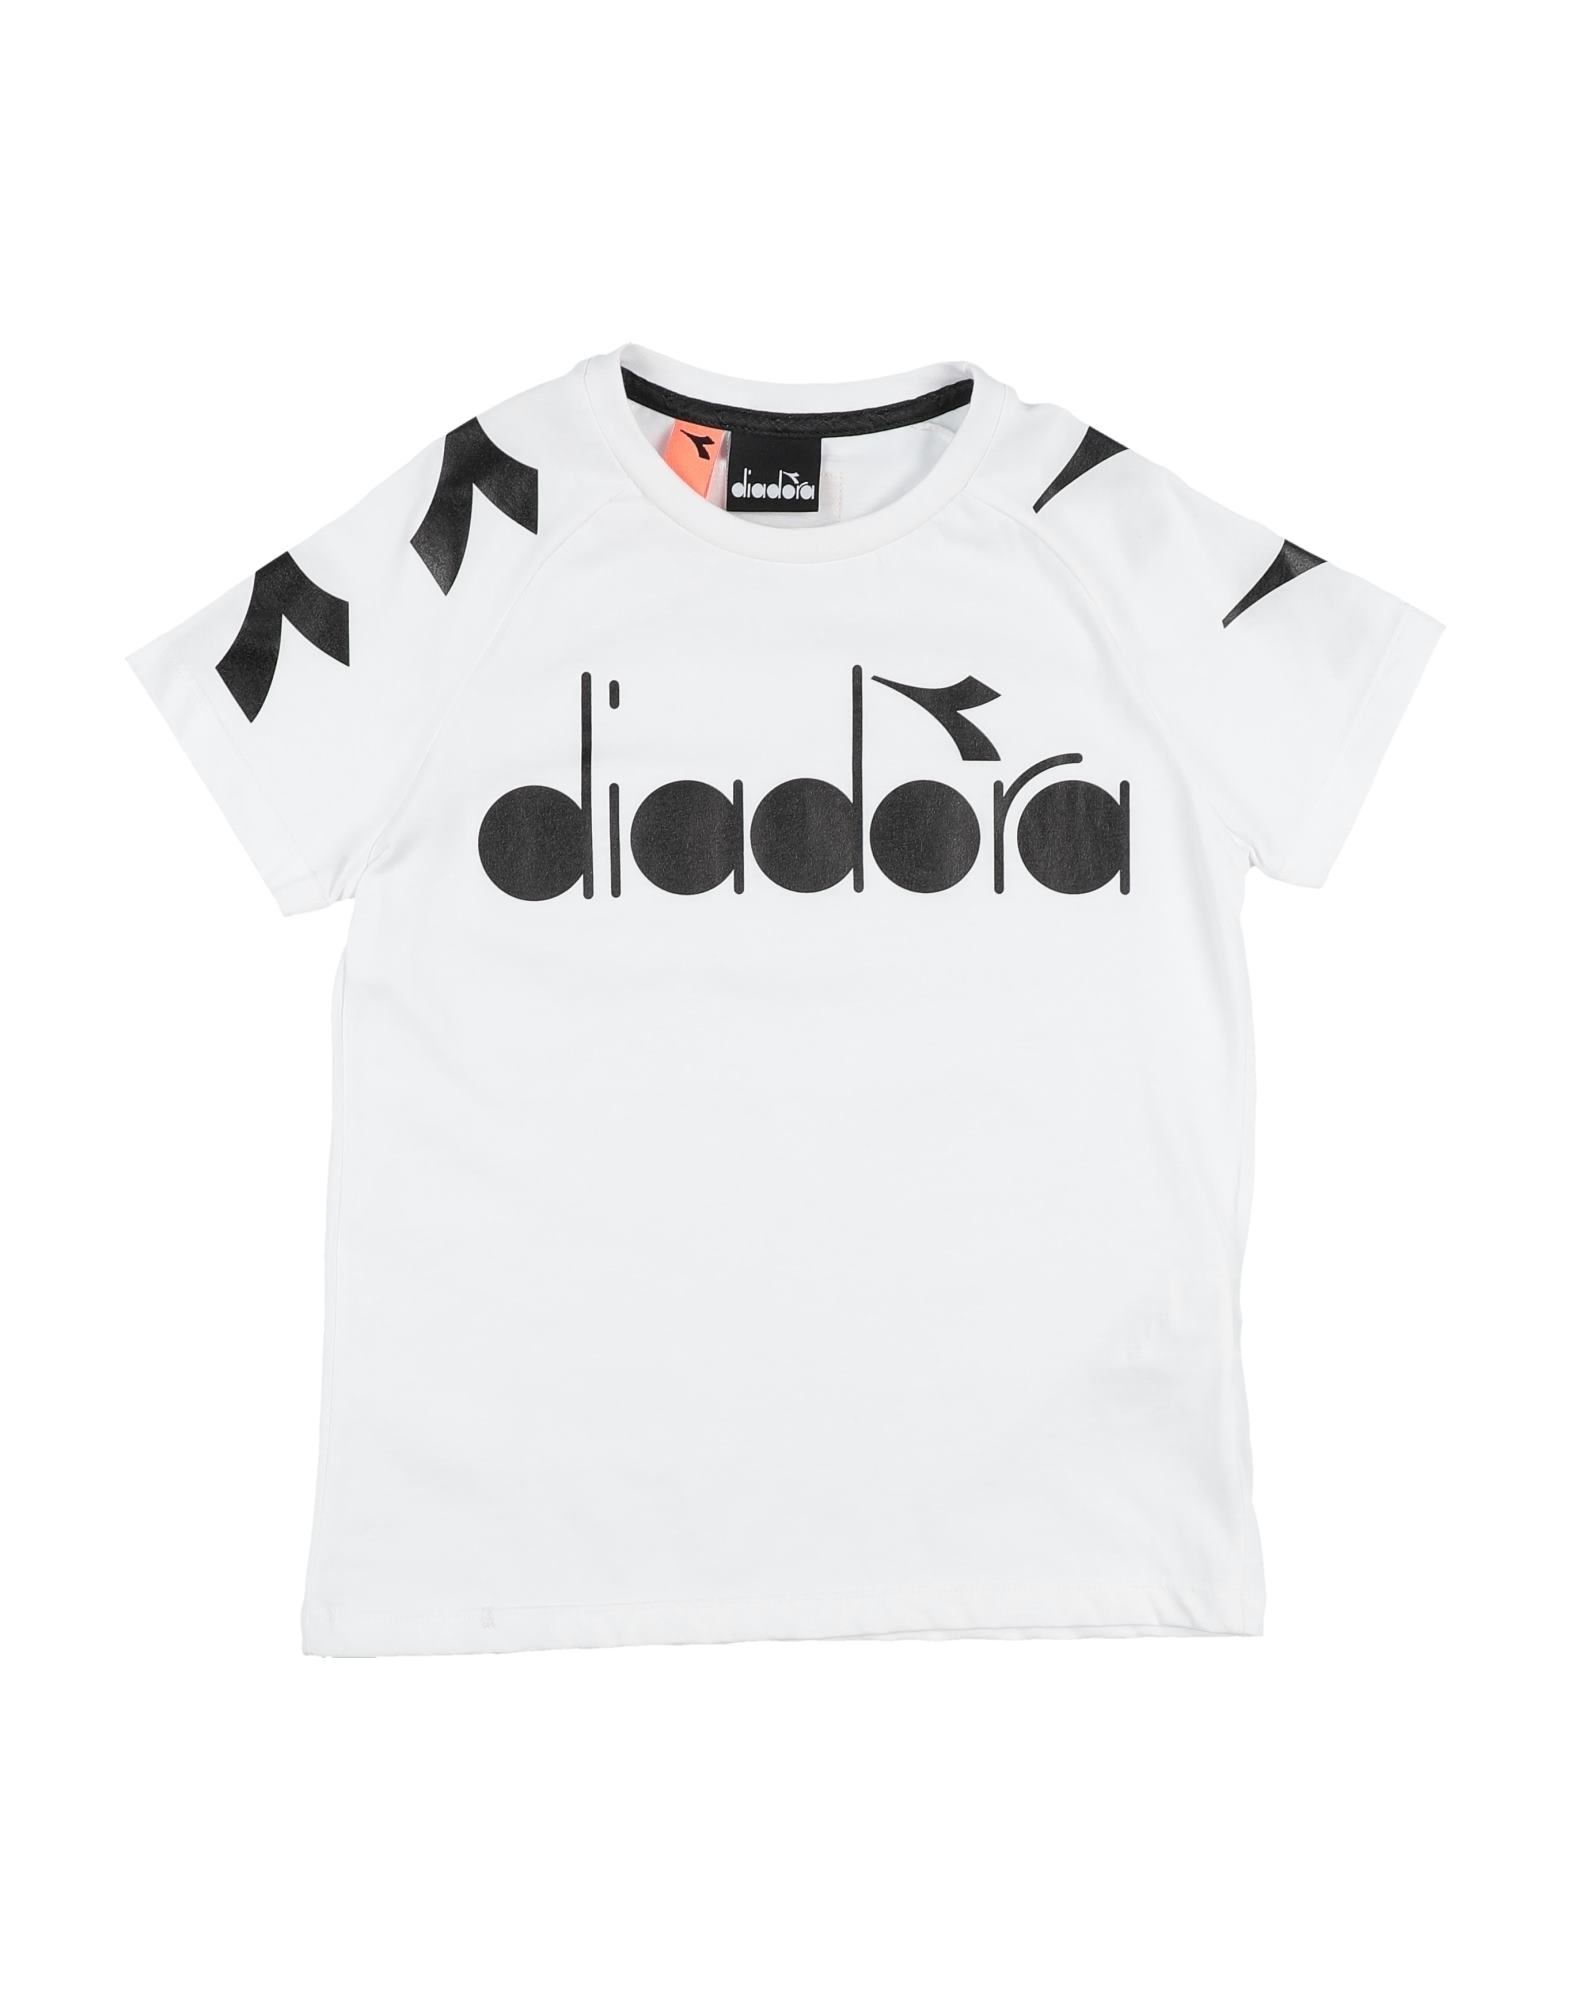 DIADORA T-shirts - Item 12535559